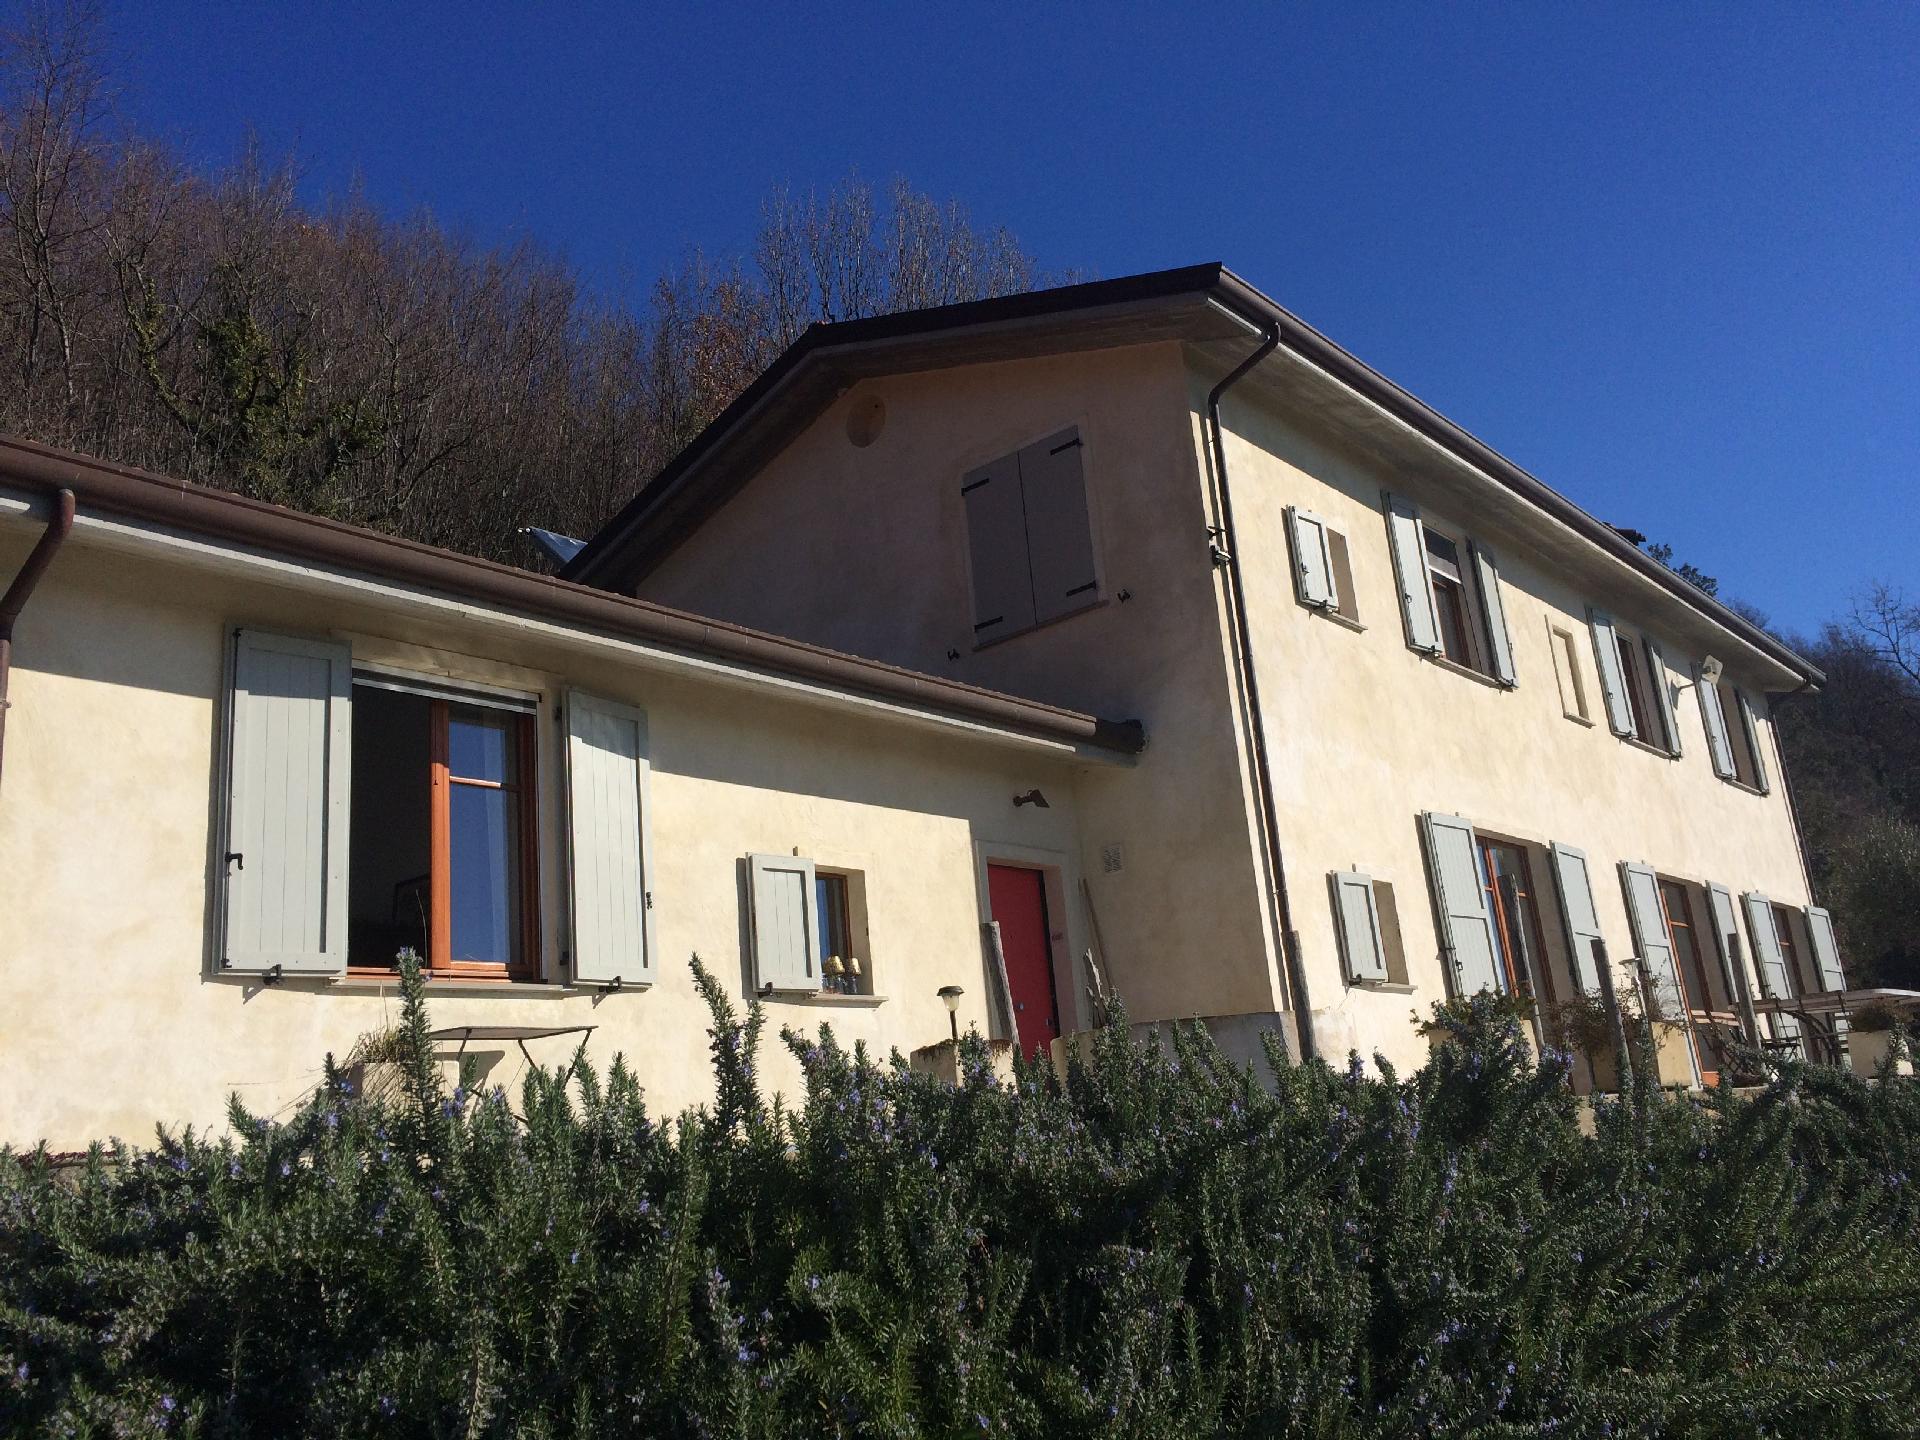 Ferienhaus mit Privatpool für 14 Personen ca. Ferienhaus in Italien